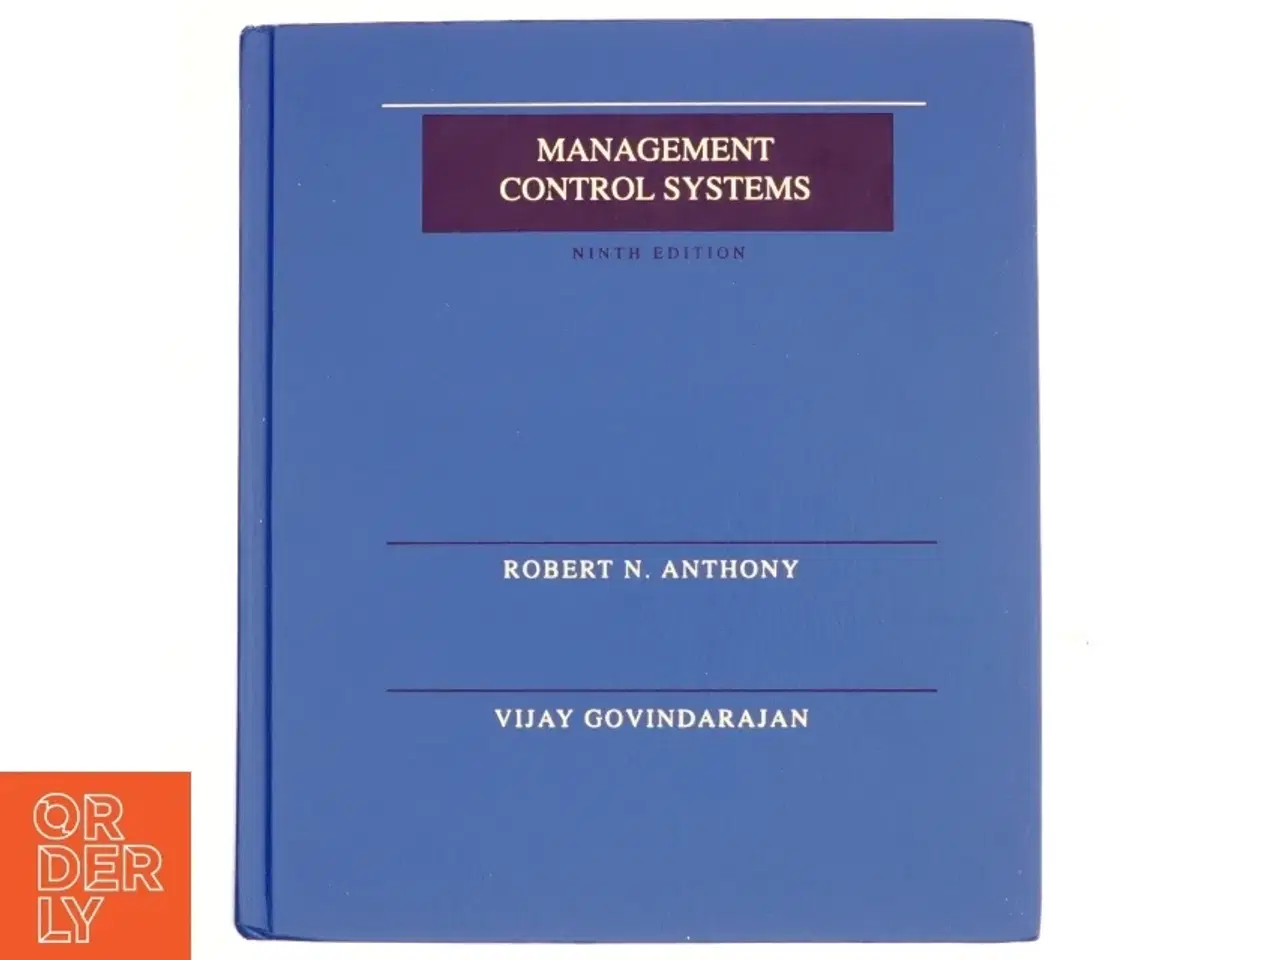 Billede 1 - Management control systems, 9th Edition af Robert N. Anthony & Vijay Govindarajan (Bog) fra Irwin McGraw-Hill